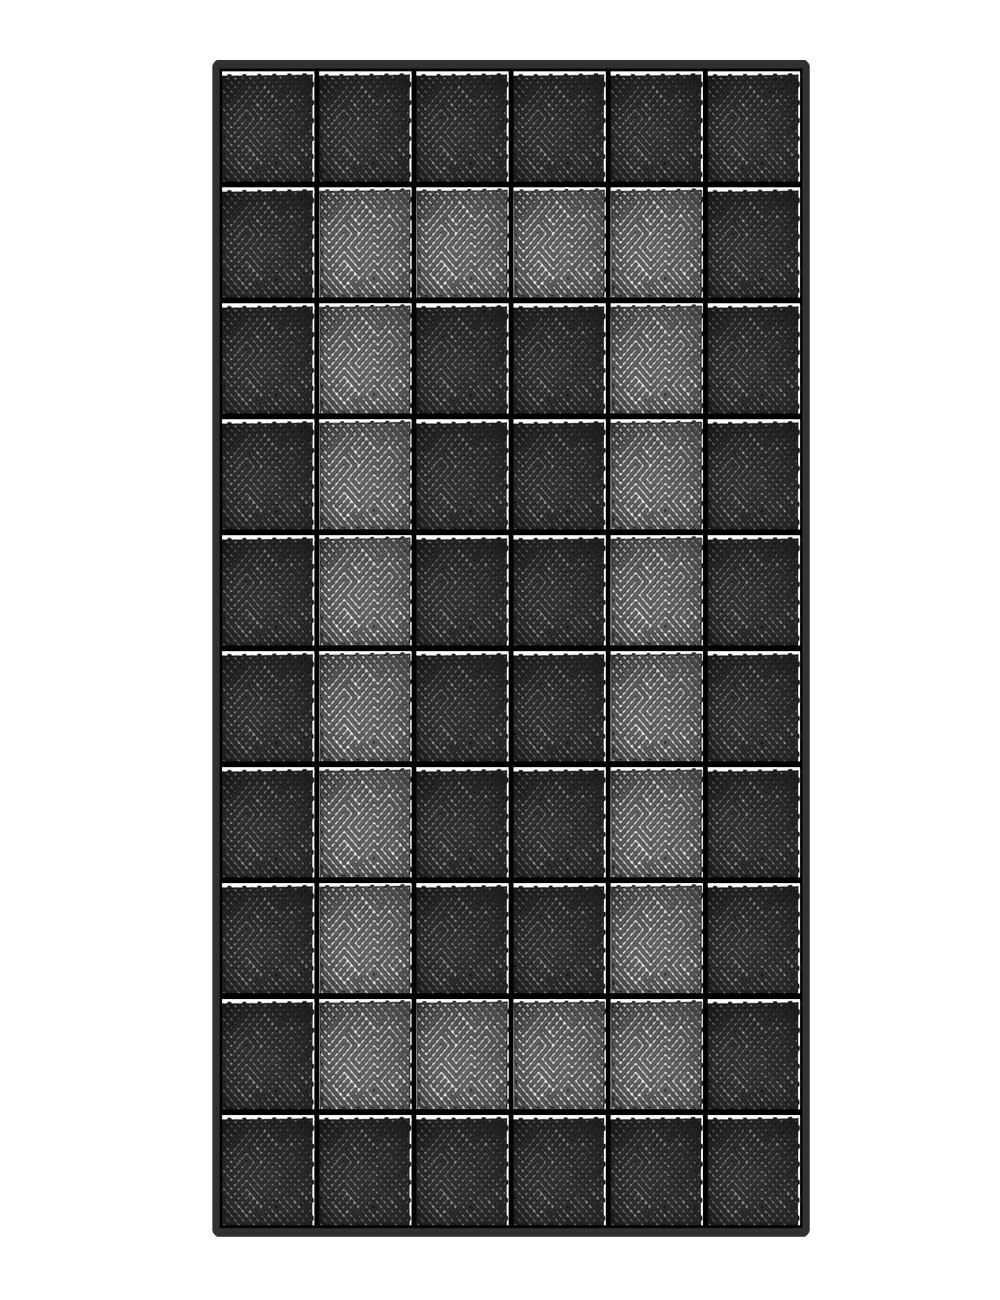 Kit dalles de sol motif racing pour garage - 15m² - 5 m x 3 m - Noir et anthracite